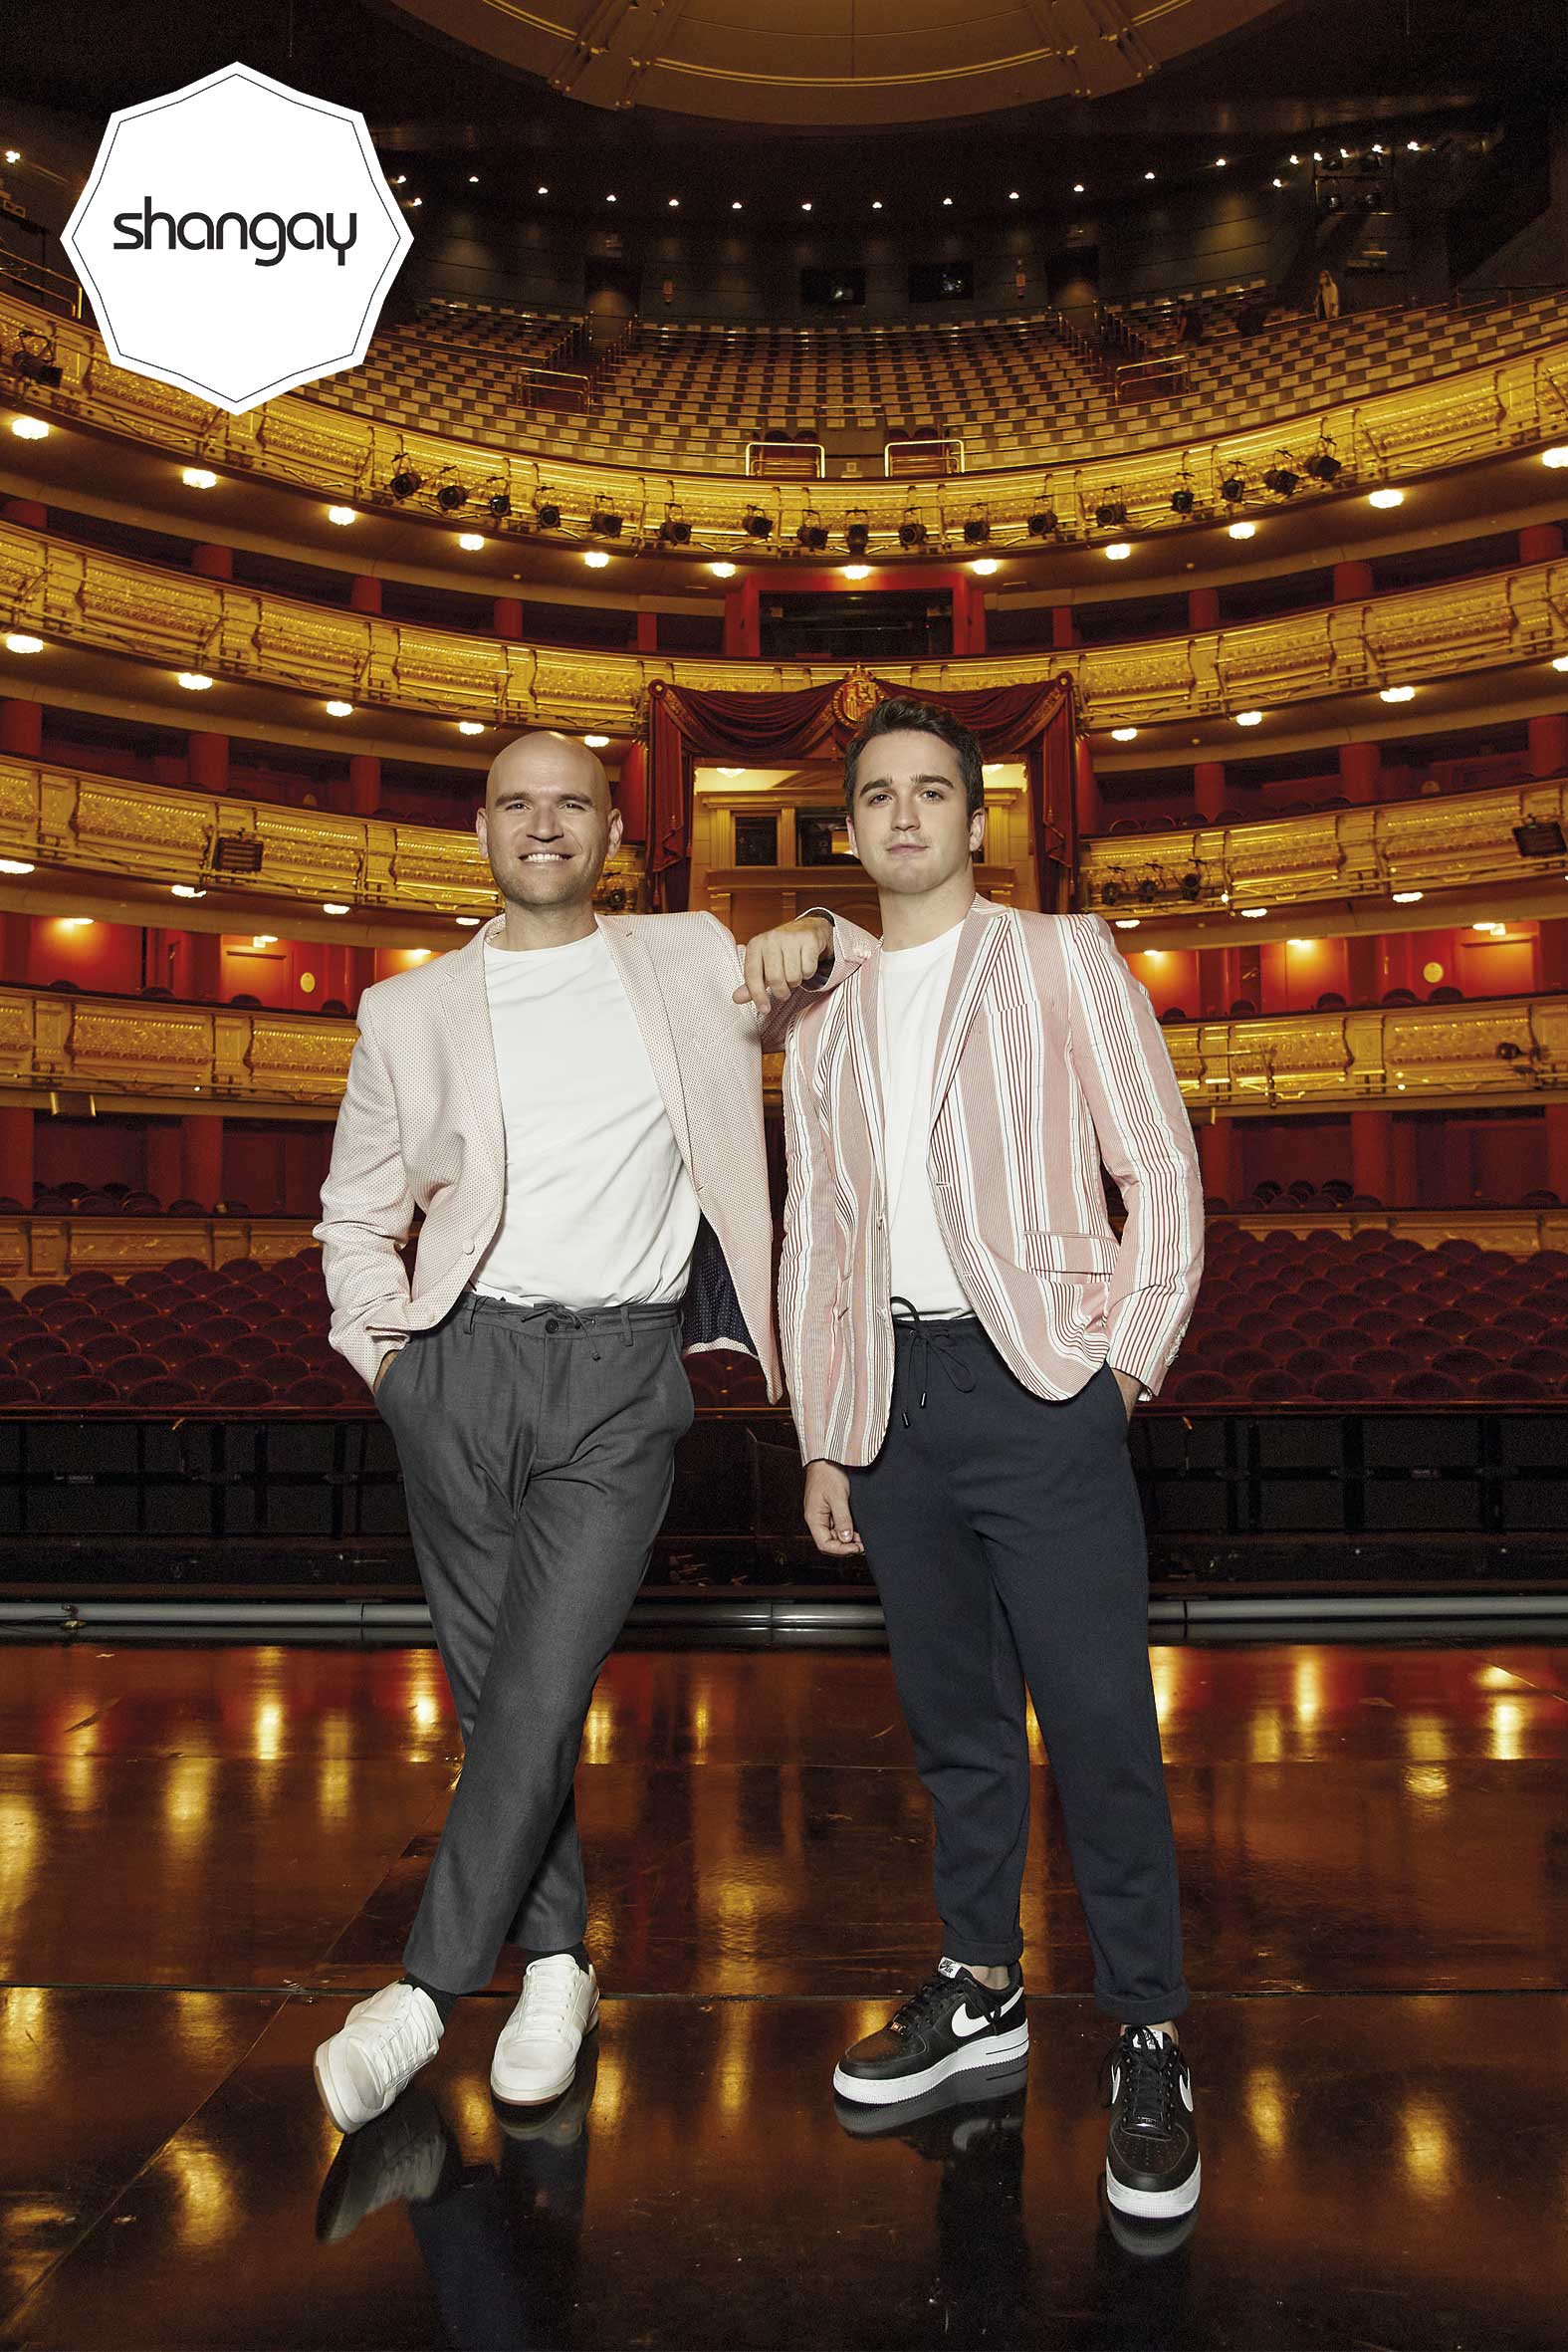 ¿Qué está pasando en el Teatro Real? (Michael Fabiano, Joan Matabosch y Xabier Anduaga nos lo cuentan)